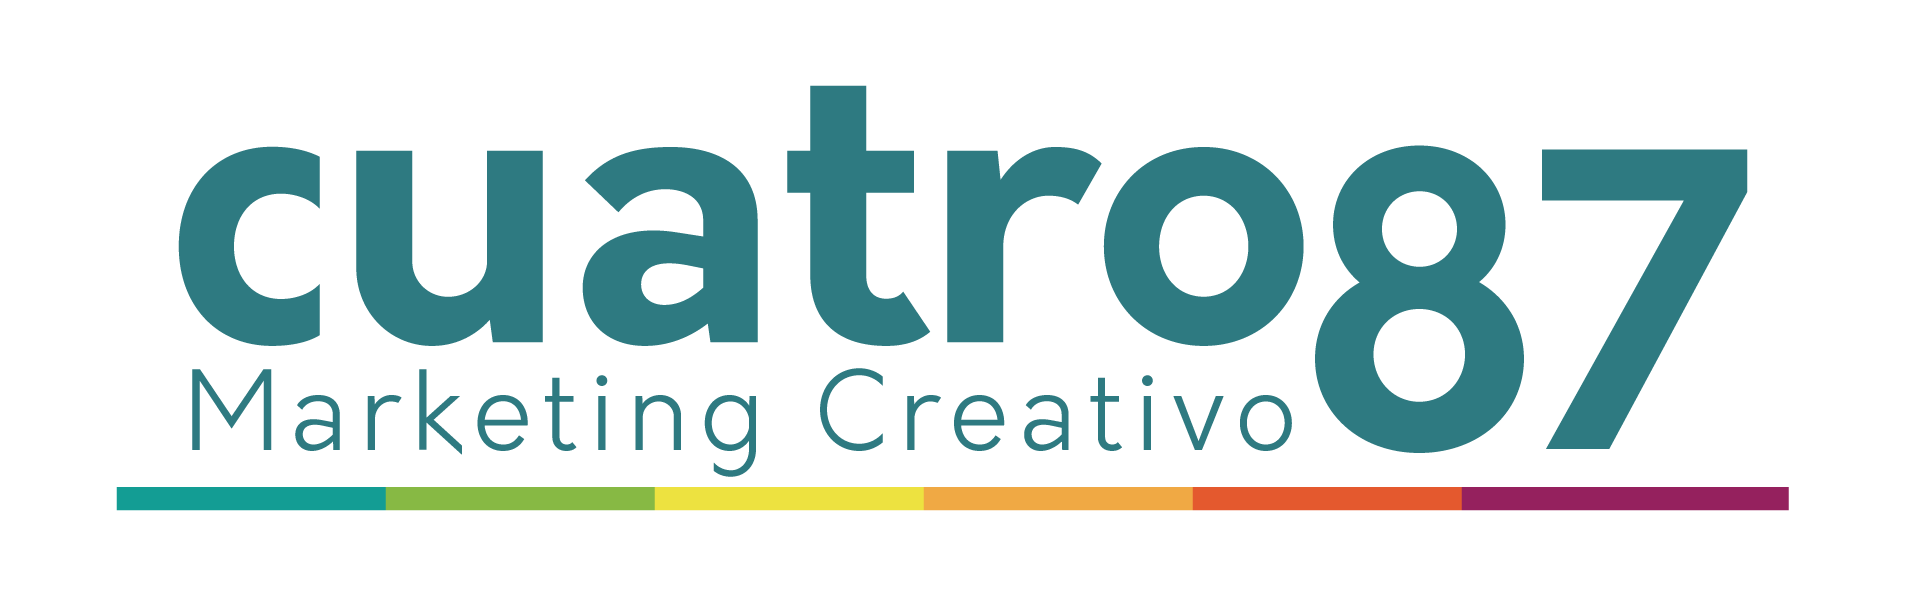 CUATRO87 Marketing Creativo marca